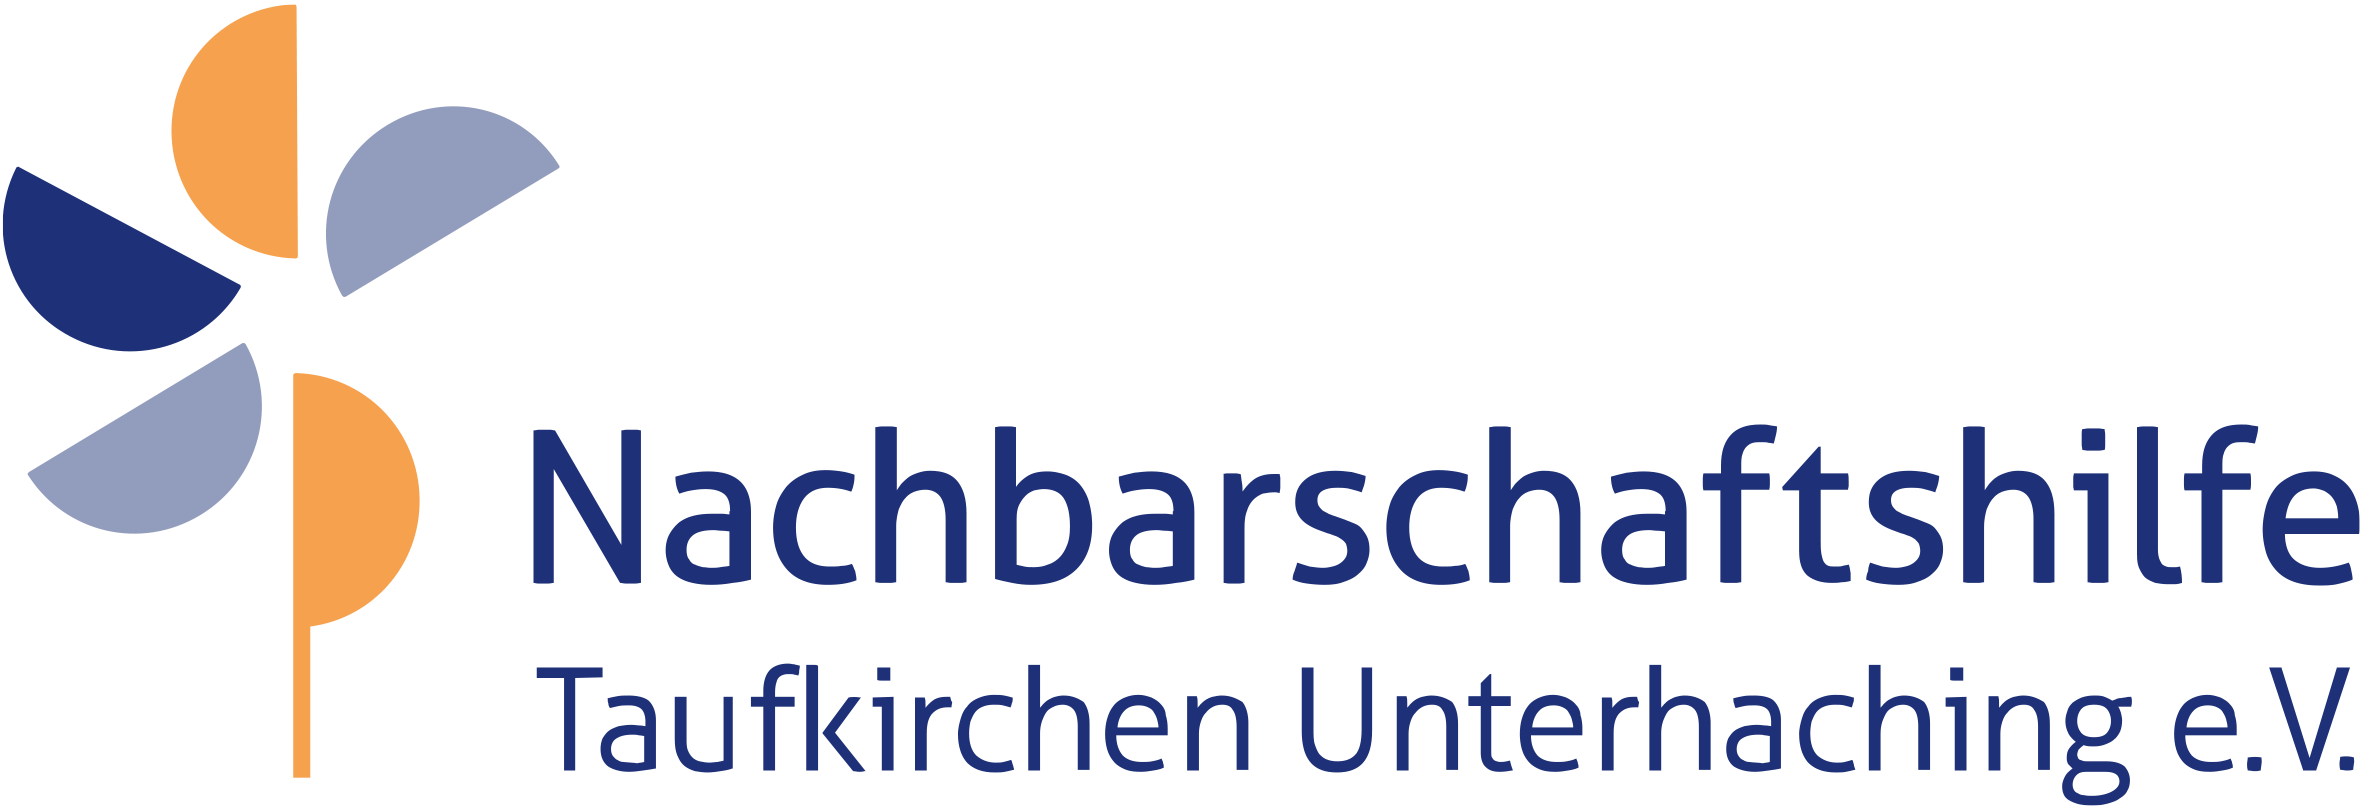 Nachbarschaftshilfe Taufkirchen Unterhaching - Home